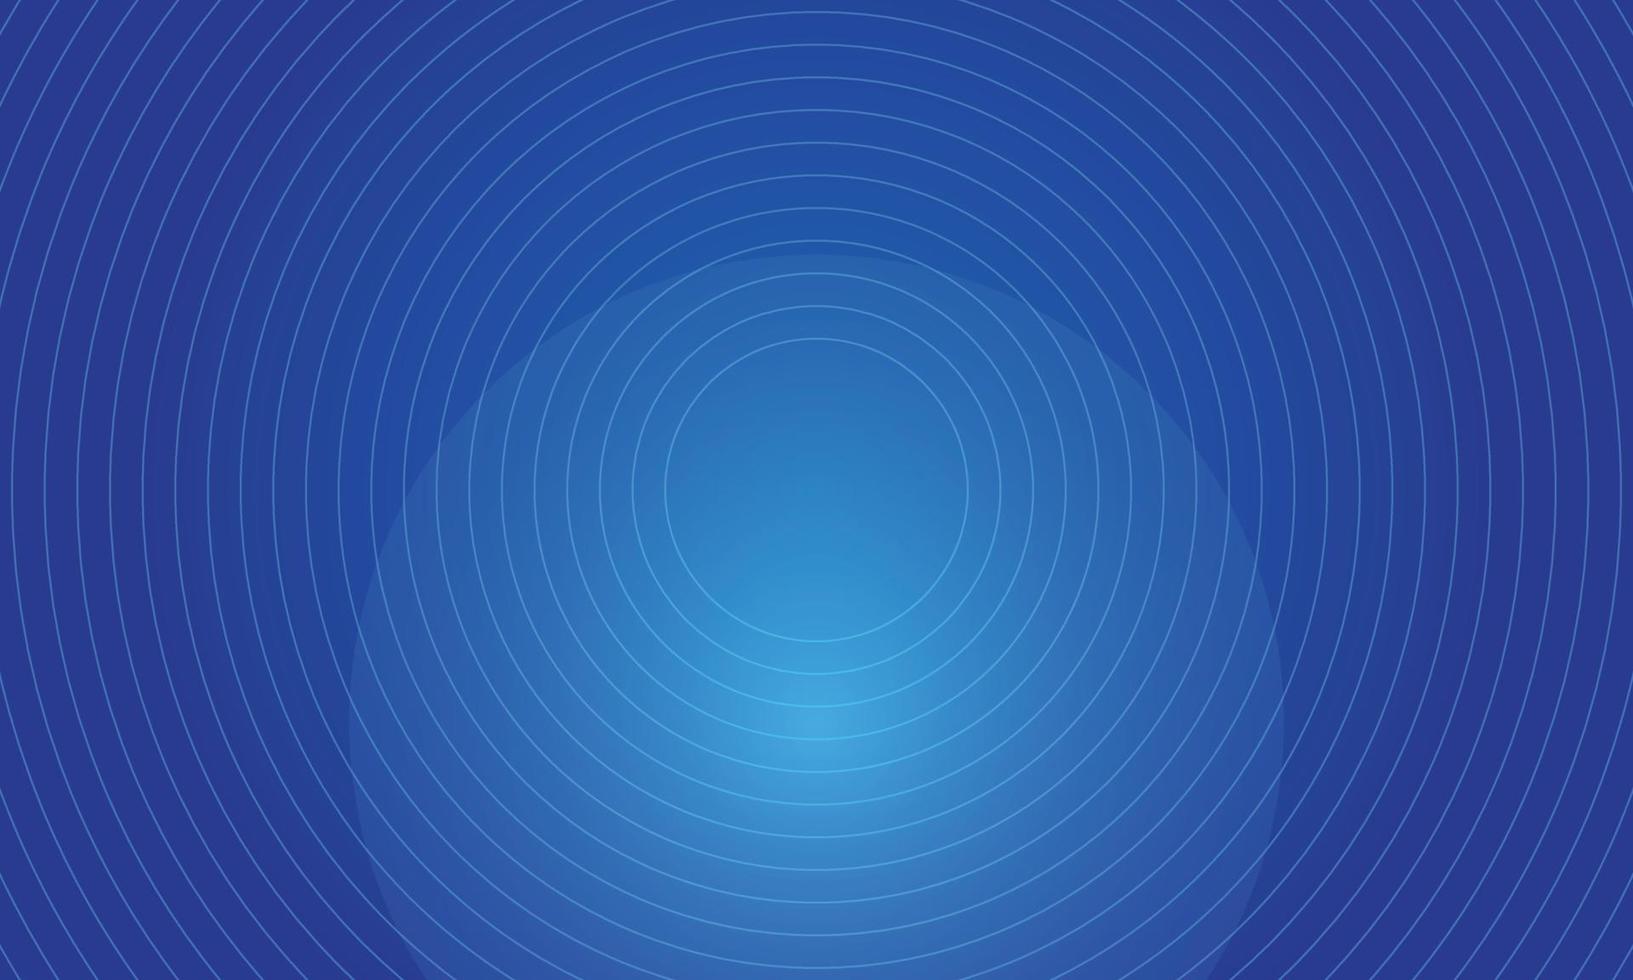 linee diagonali di sfondo vettoriale astratto dinamico blu brillante. Copertina 3d del banner di presentazione aziendale per la festa notturna dell'evento in vendita. illustrazioni di decorazione a strisce di linee d'onda a cerchio morbido in rapido movimento.